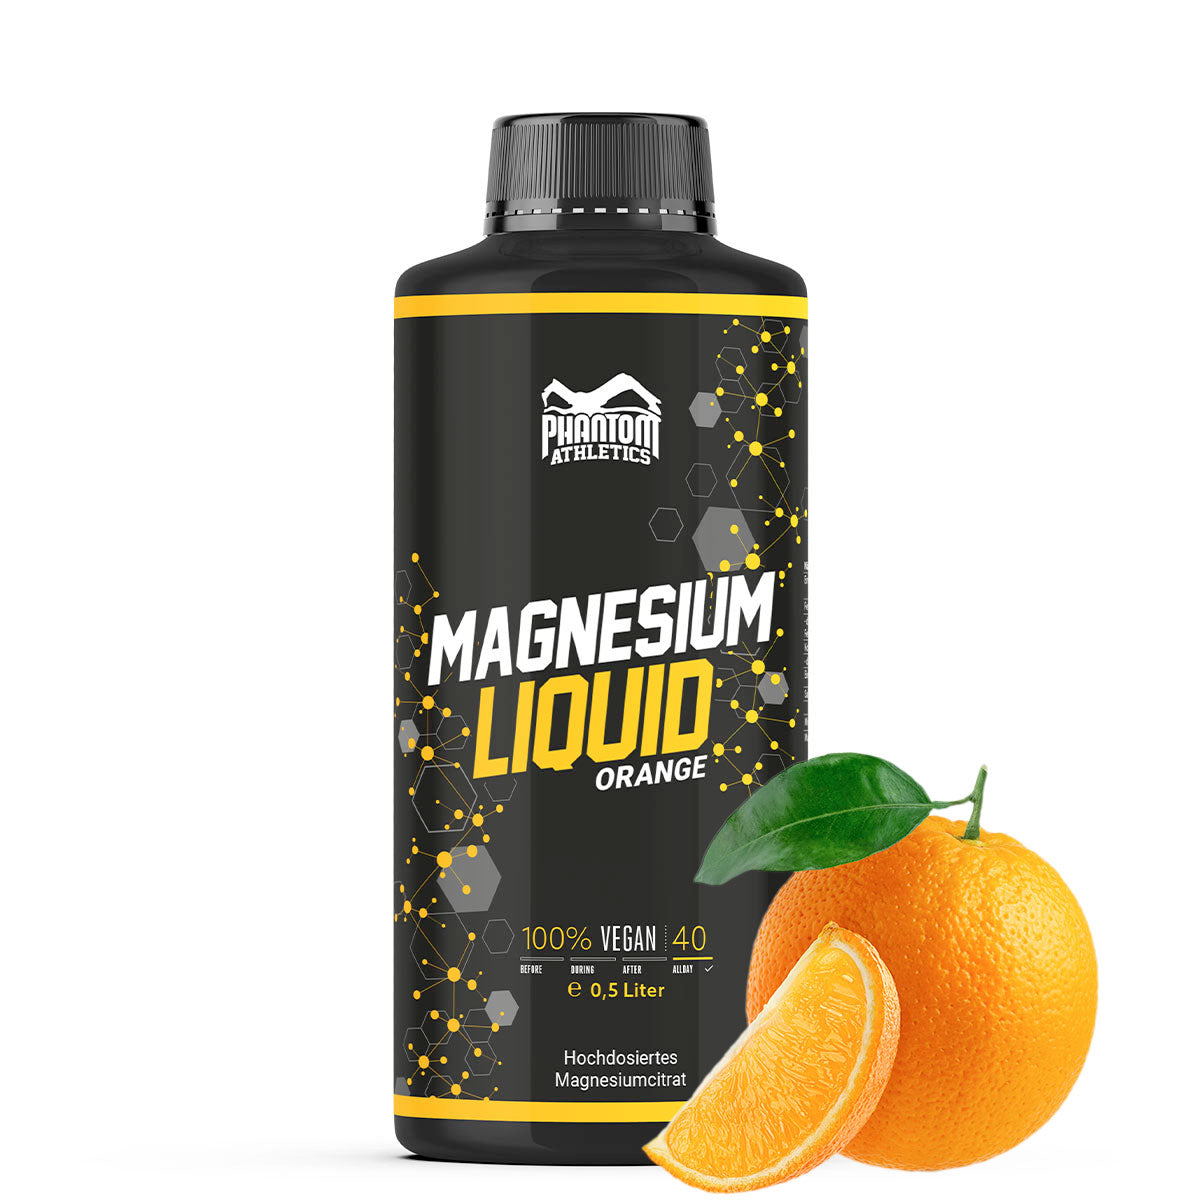 Phantom Magnesium Liquid - Magnesio liquido per una migliore rigenerazione nelle arti marziali.